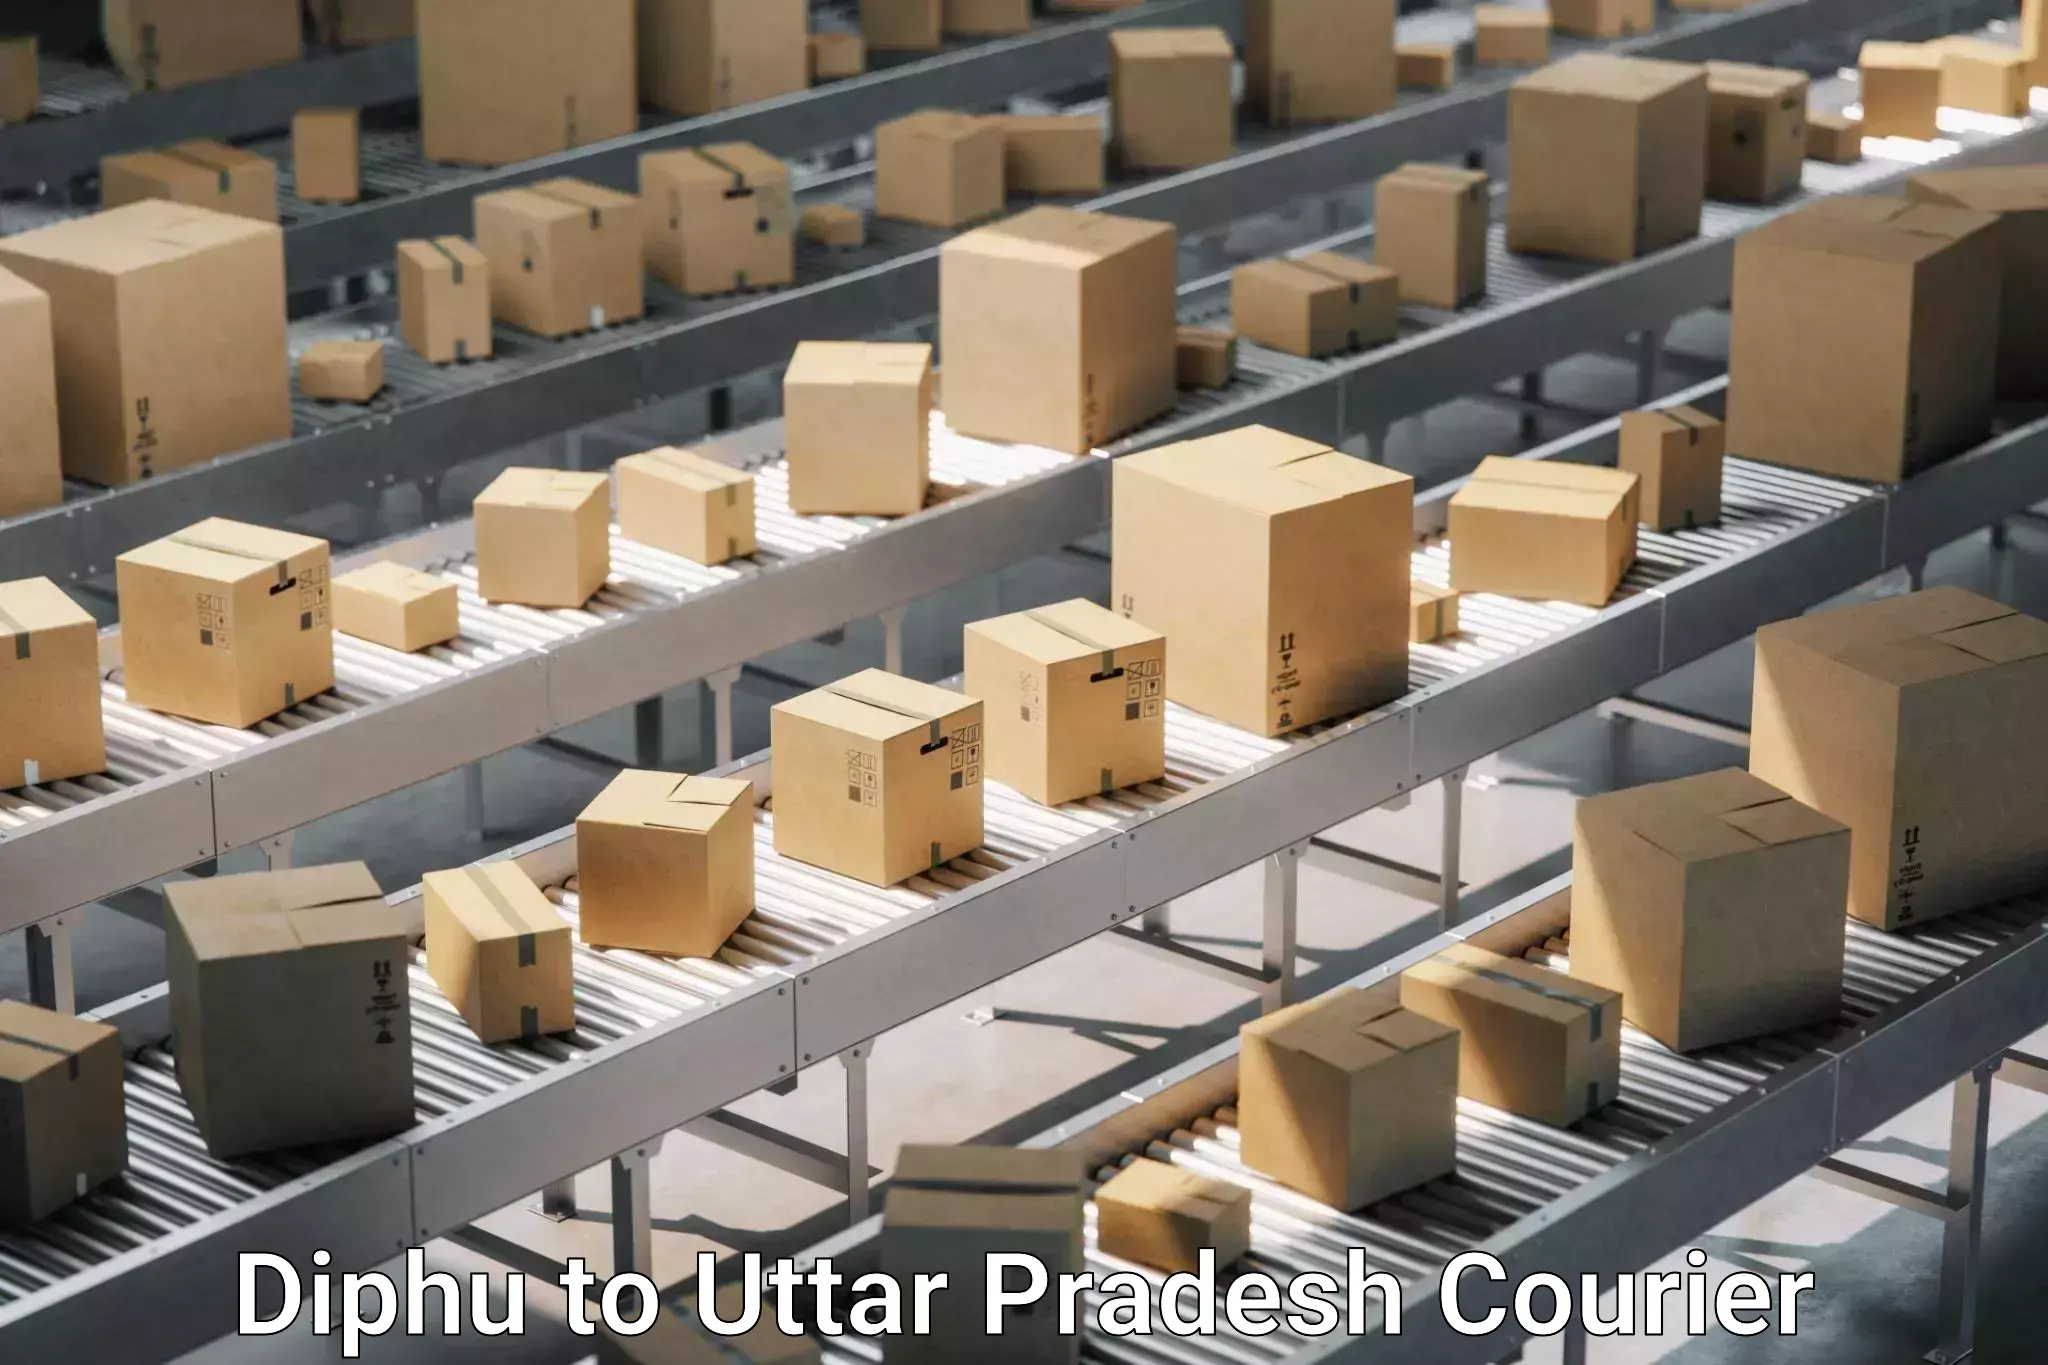 Furniture delivery service Diphu to Barhalganj